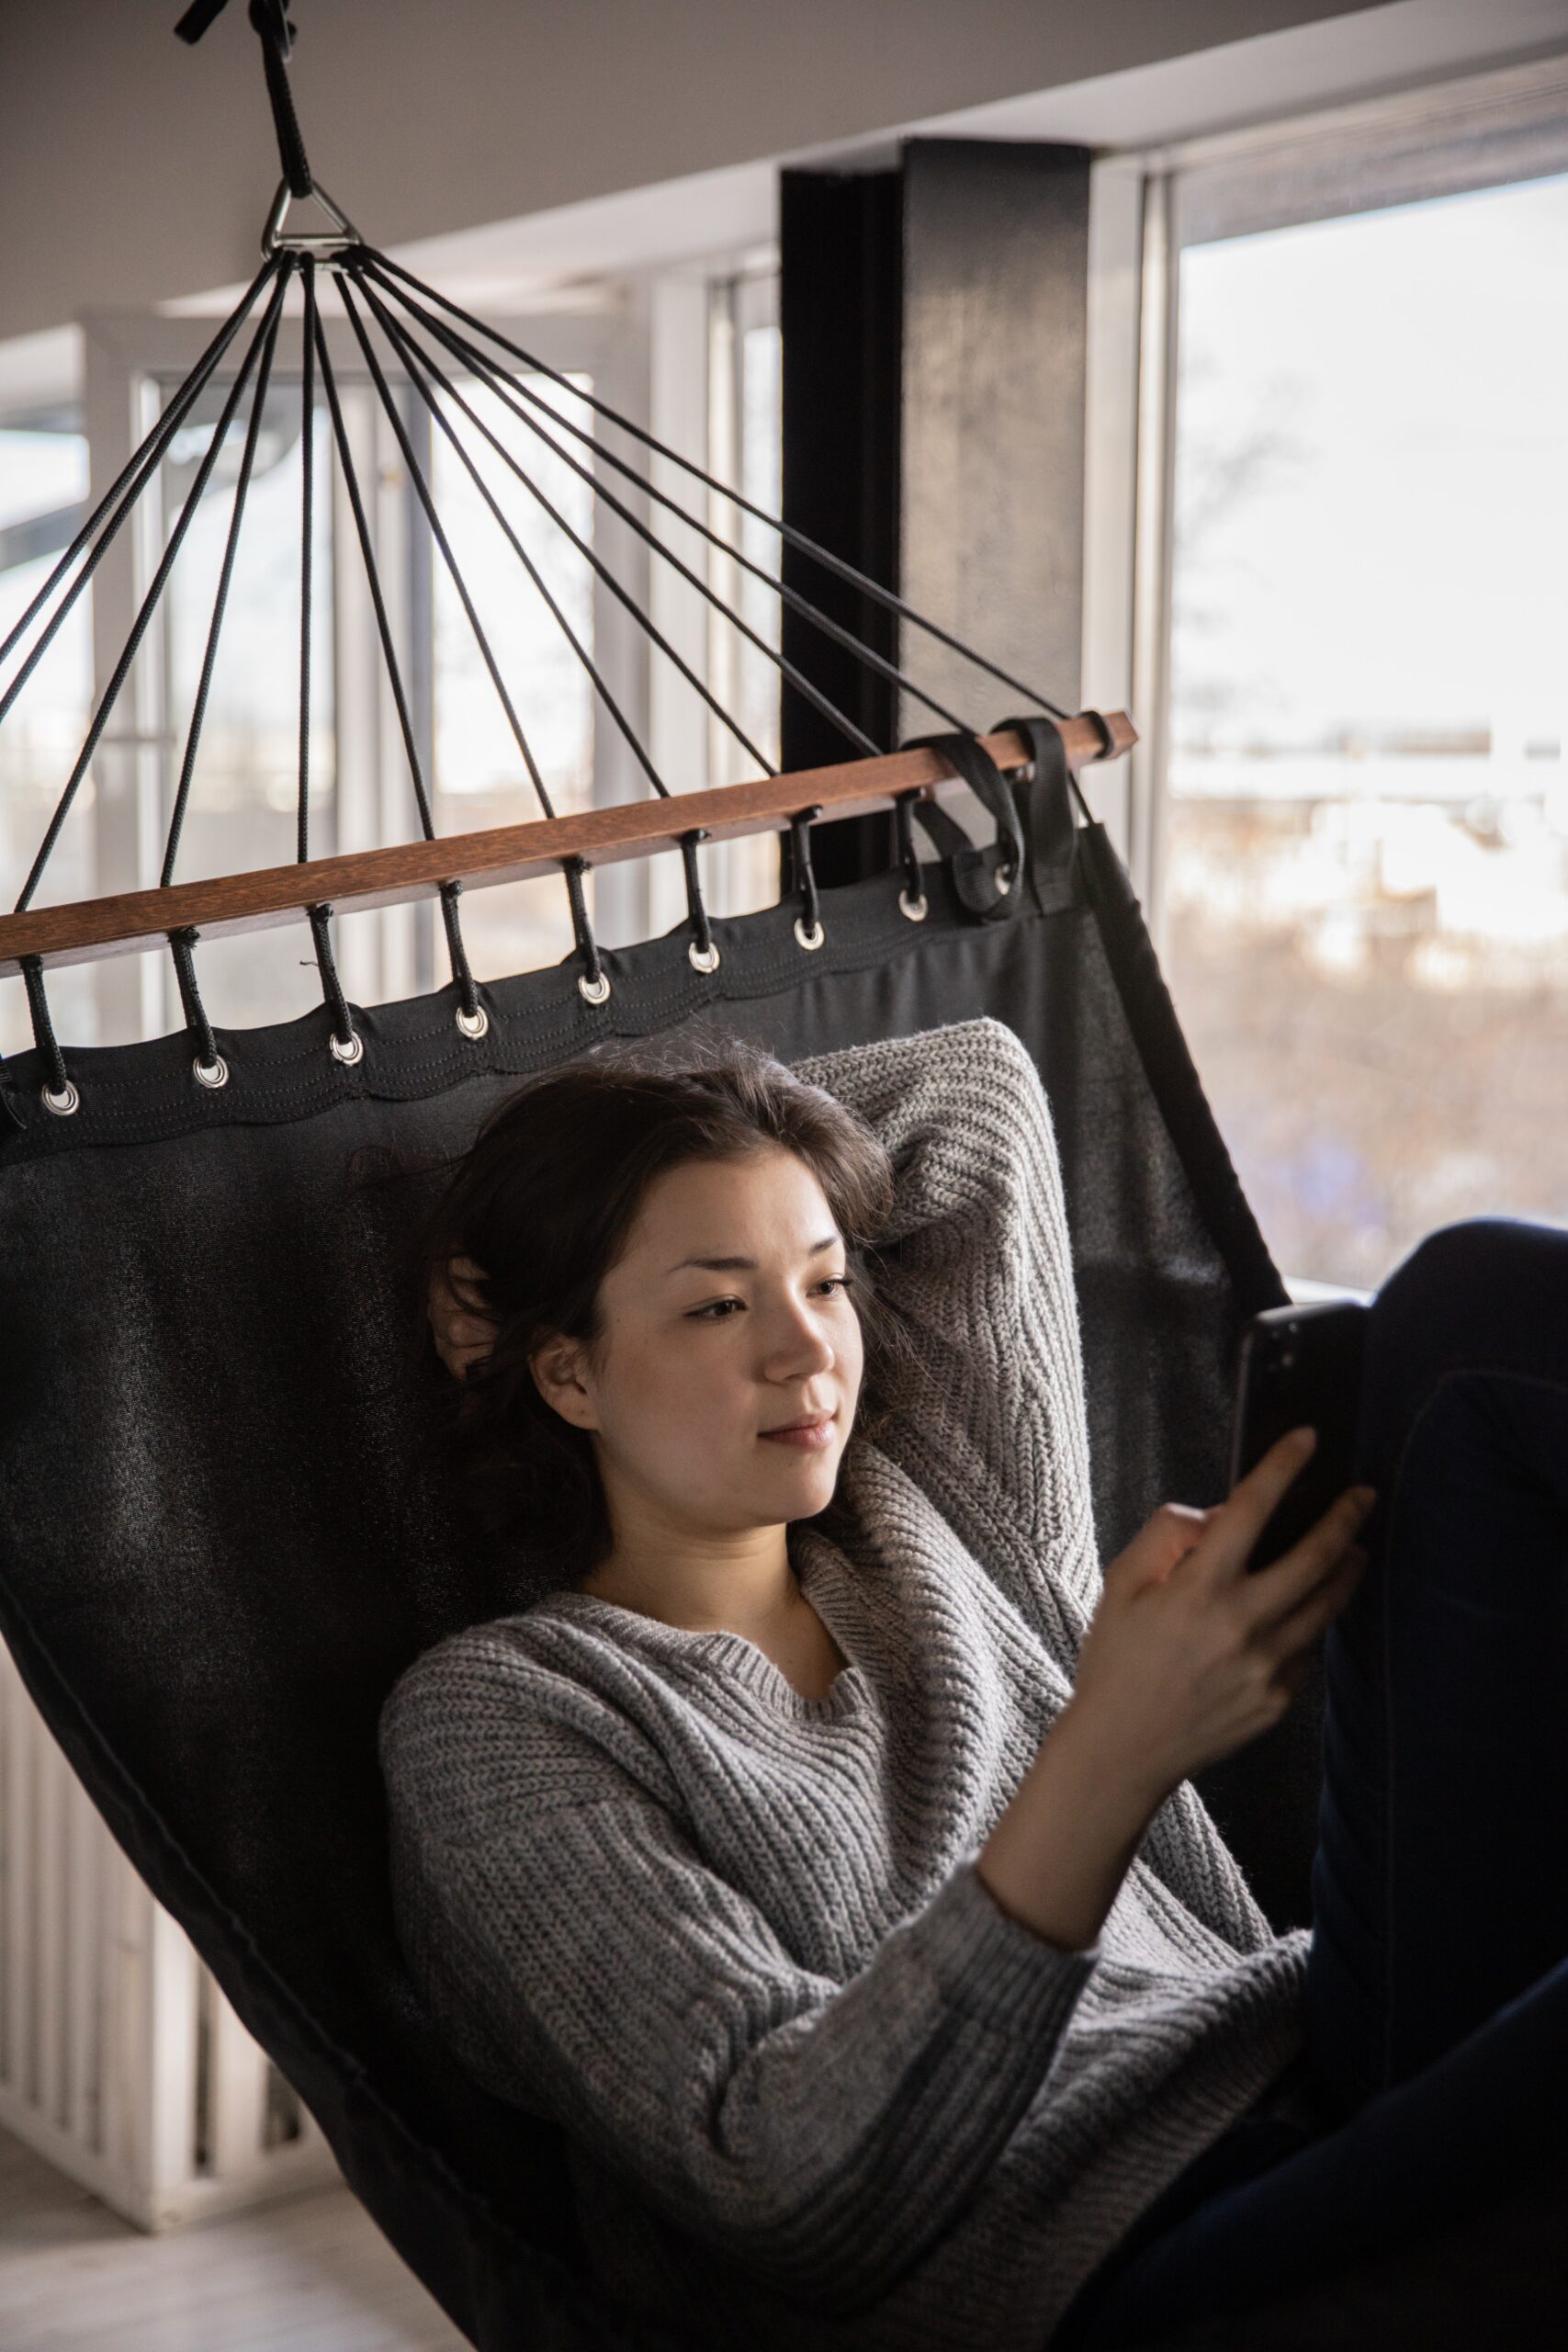 Woman reading in hammock